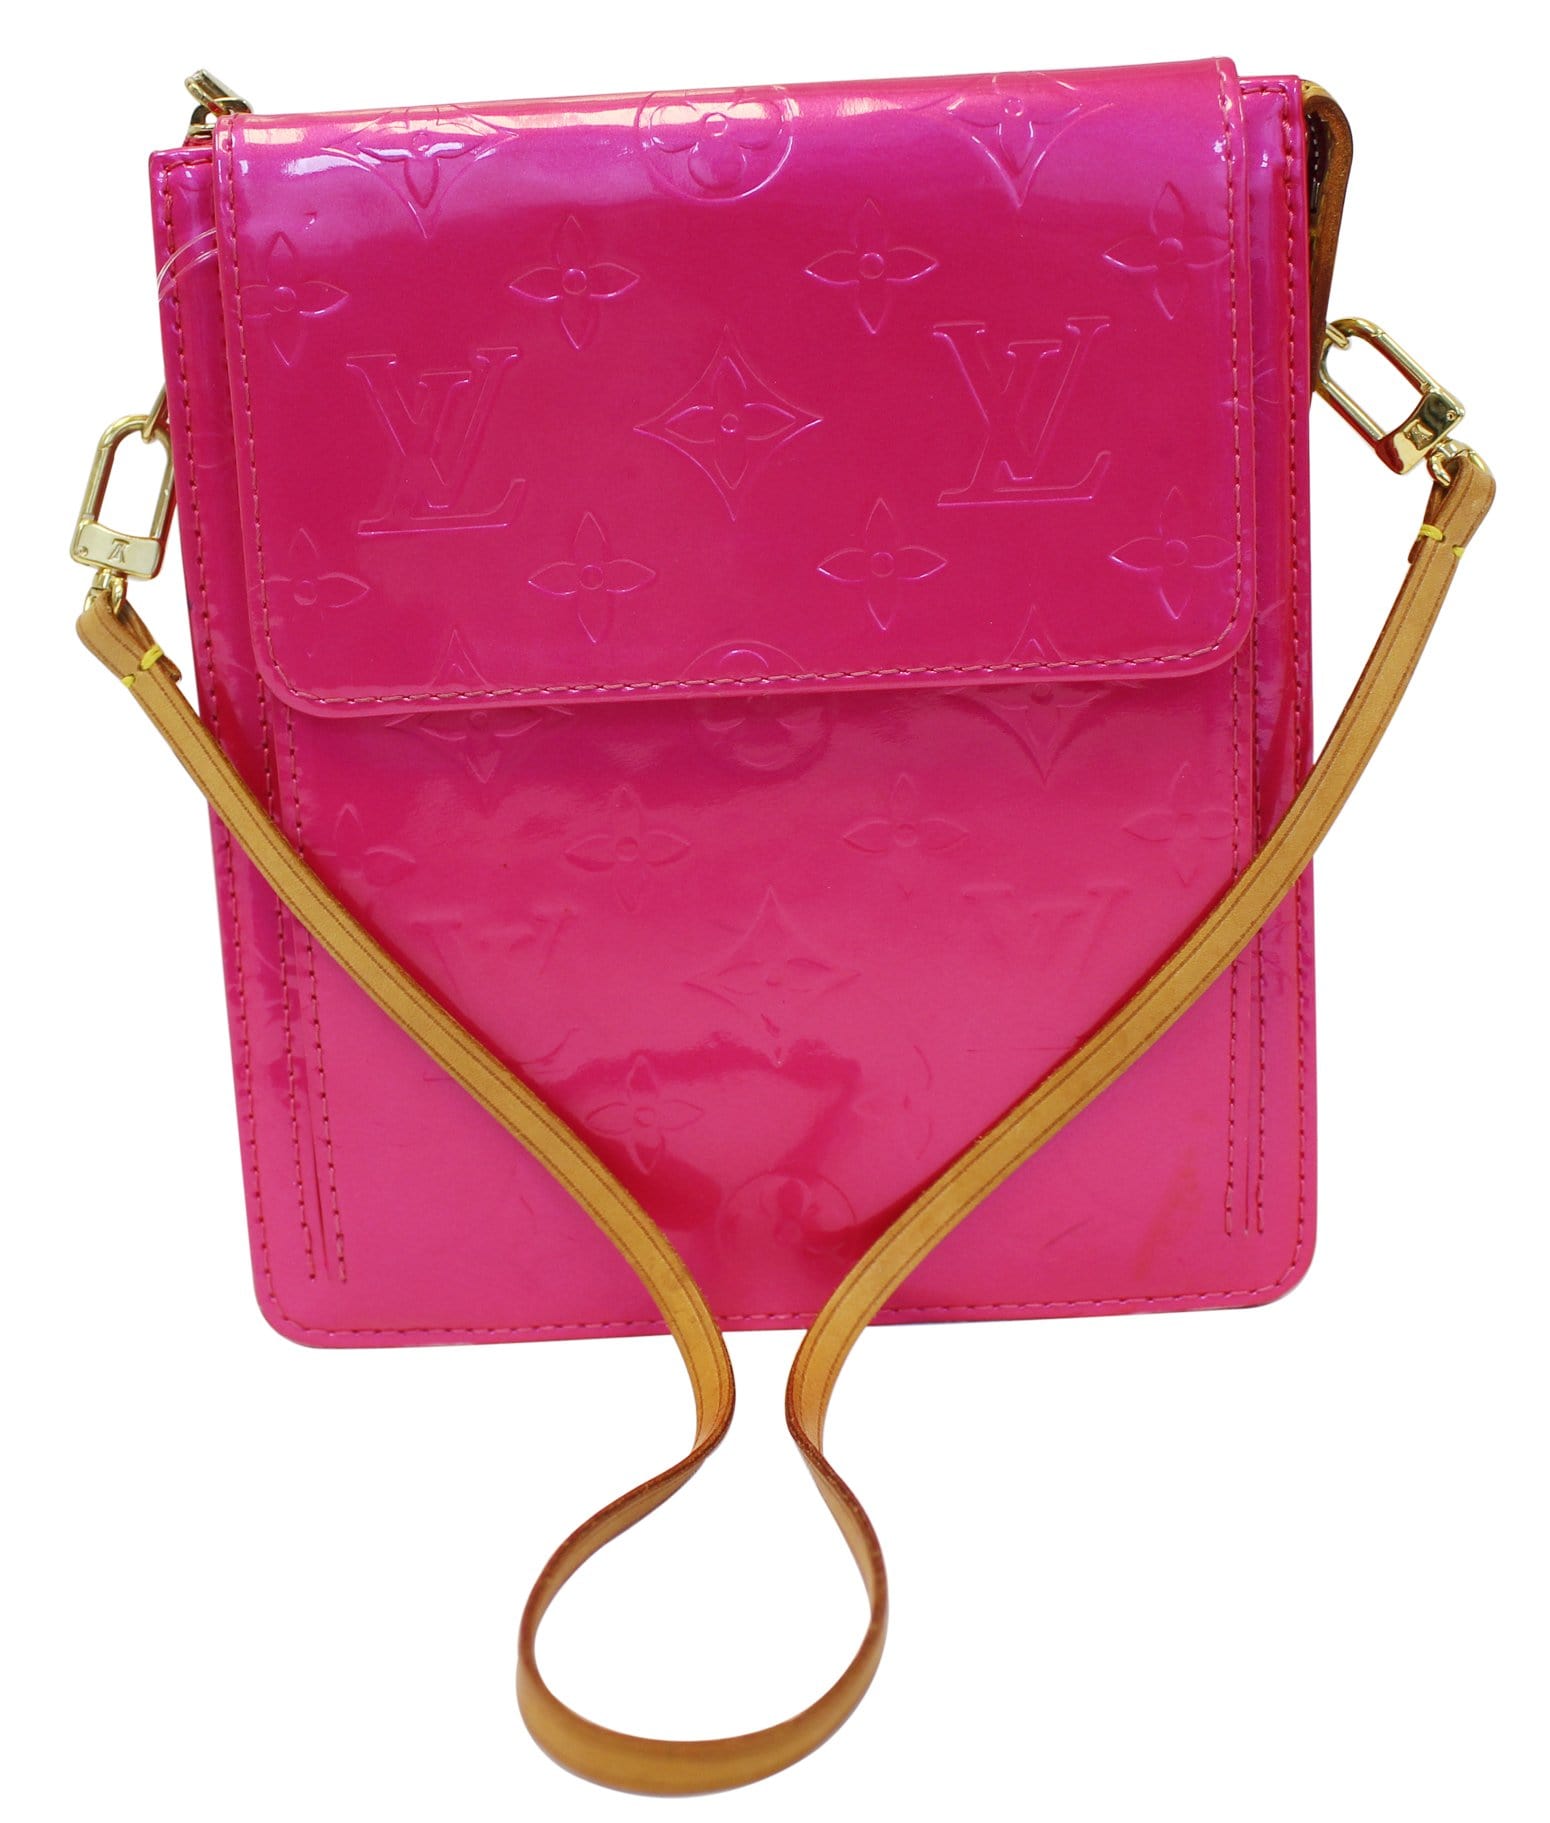 pink Louis Vuitton shoulder bag.  Louis vuitton, Bags, Louis vuitton bag